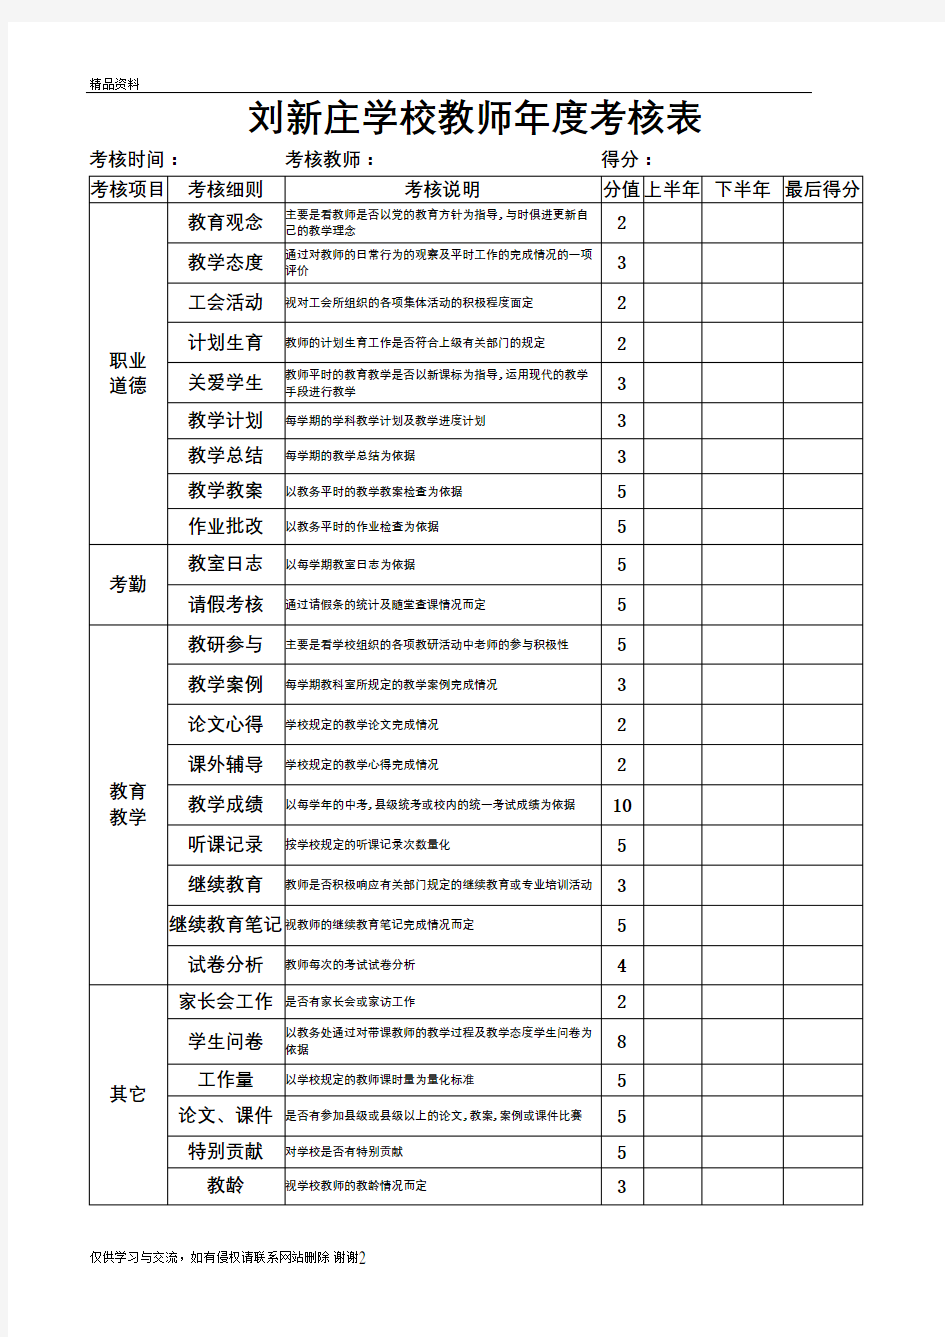 刘新庄学校教师年度考核表资料